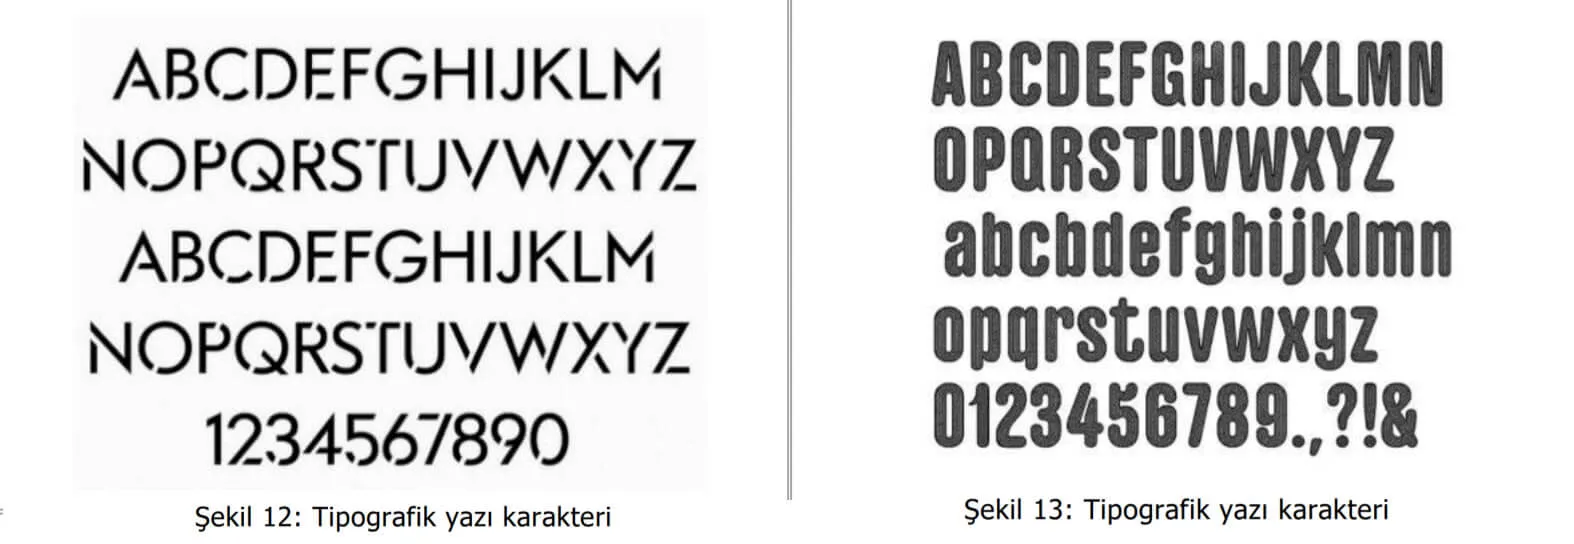 tipografik yazı karakter örnekleri-amasya patent